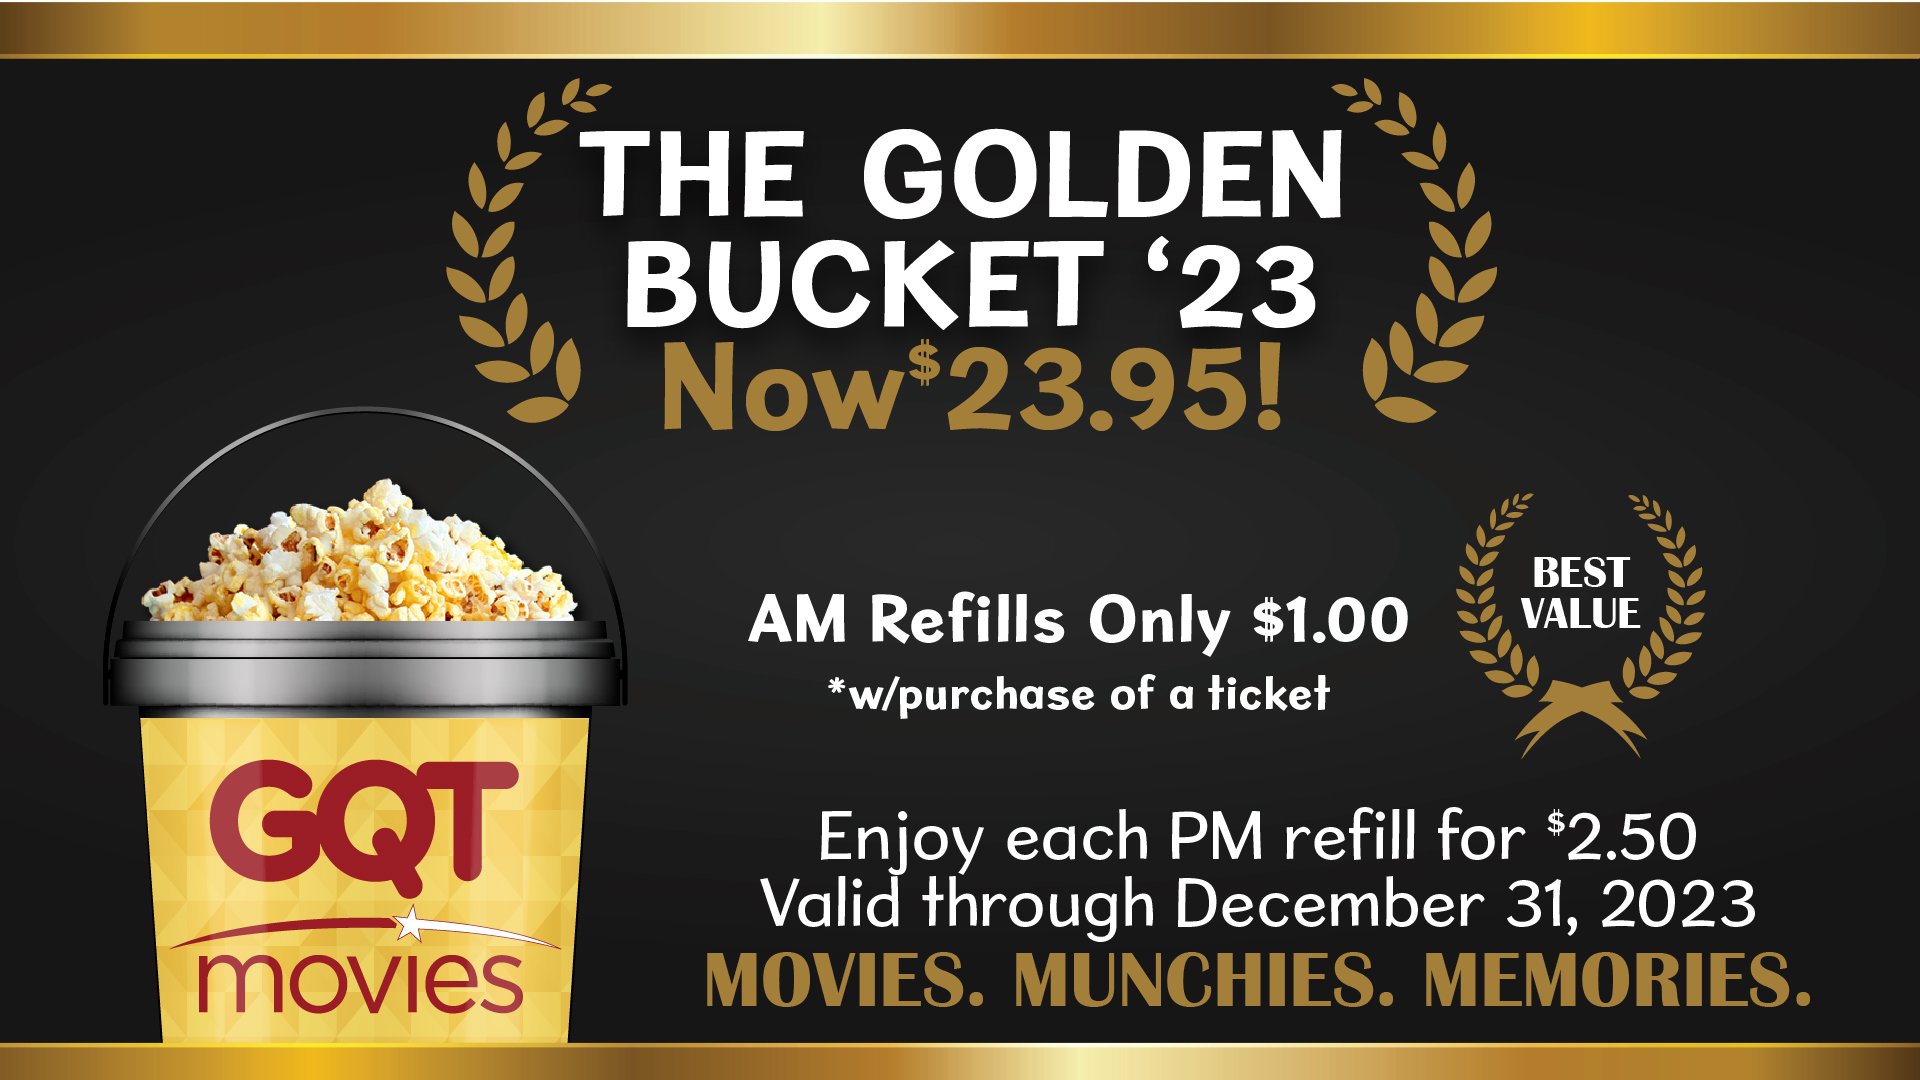 The Golden Bucket